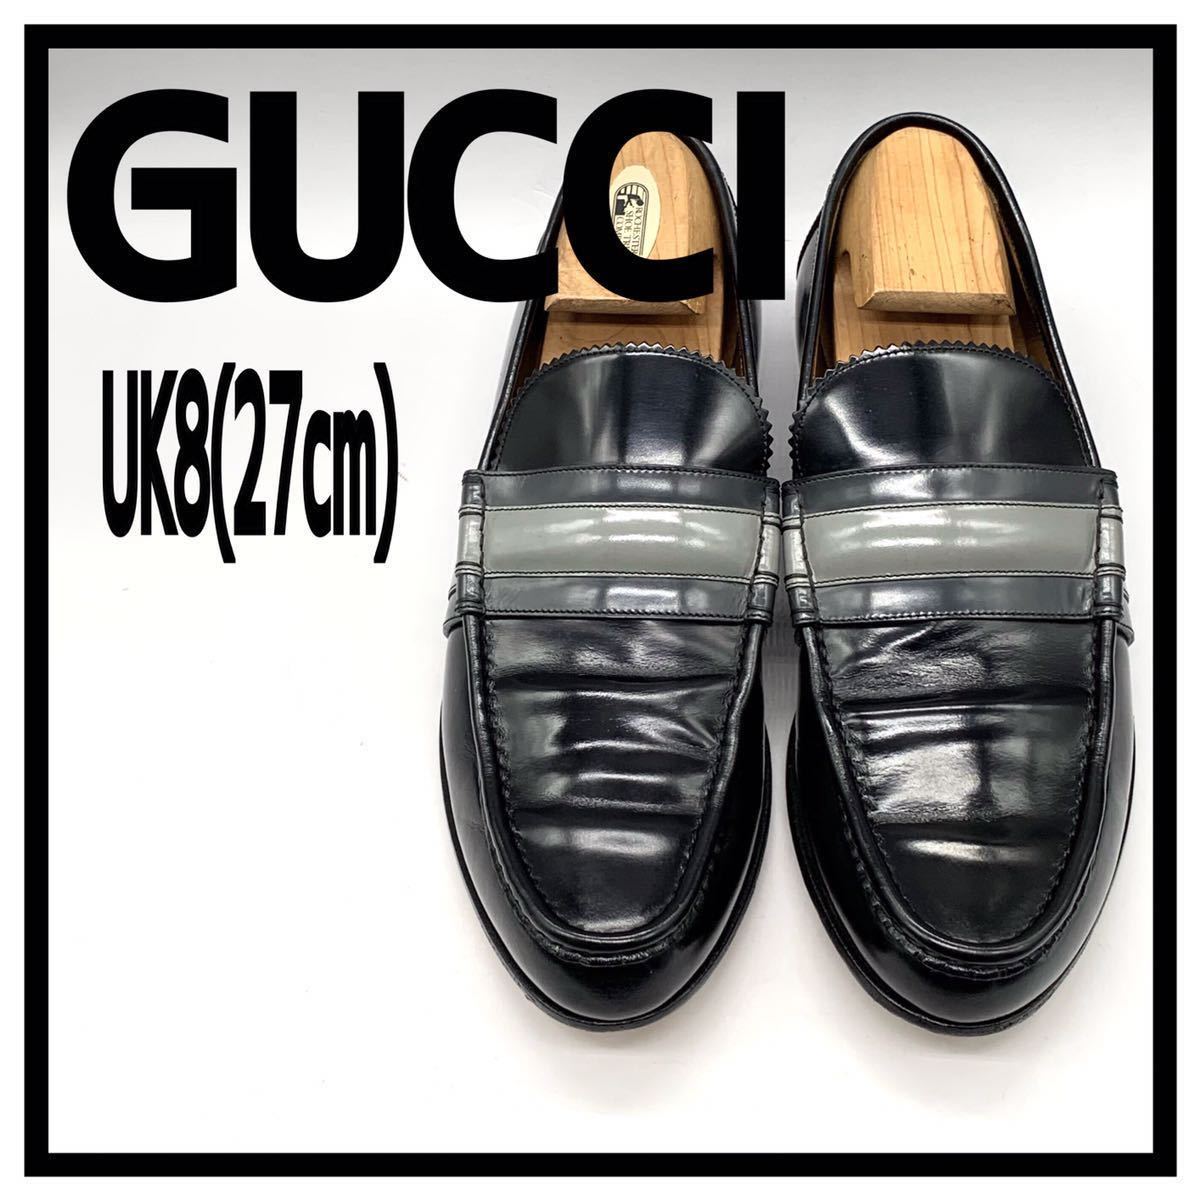 GUCCI (グッチ) ドレスシューズ ローファー スリッポン レザー ブラック 黒 グレー ネイビー ボーダー UK8 27cm 革靴 ビジネス イタリア製